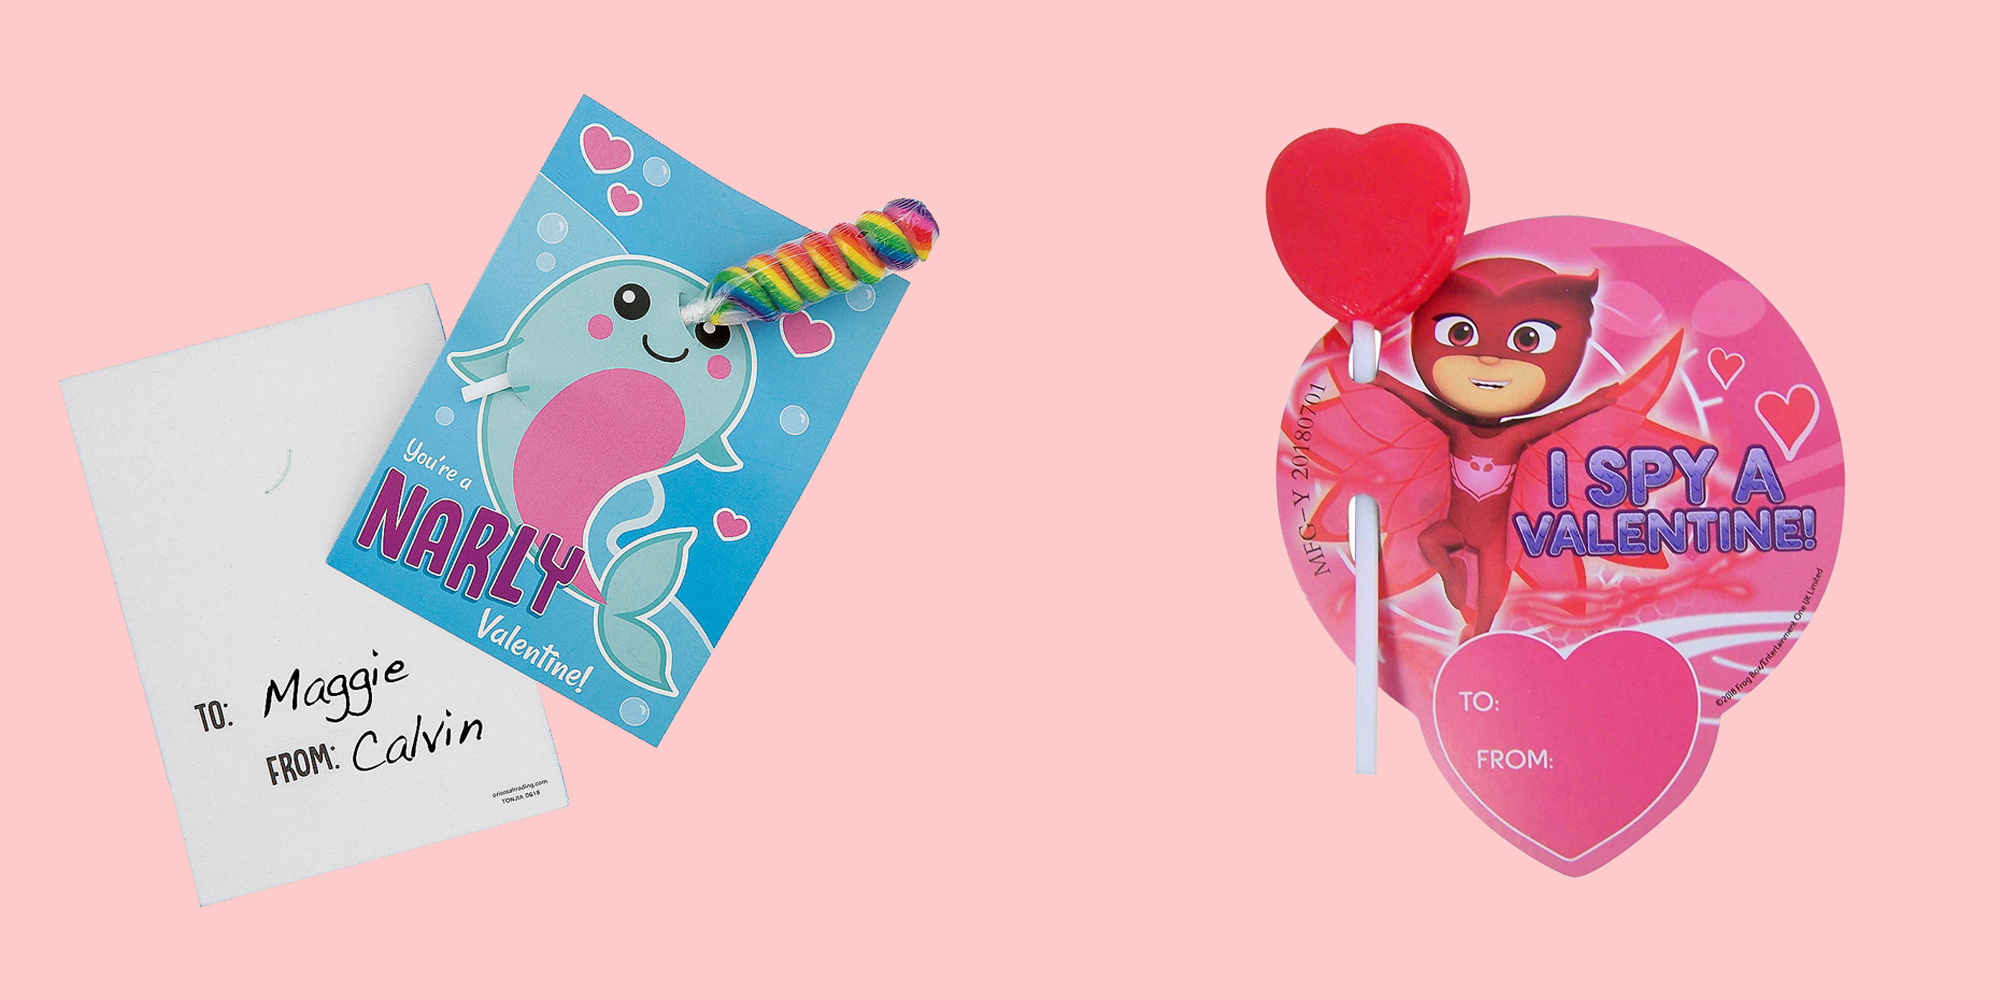 School Kids Valentines Arcade Game Claw Machine Valentines Card Printable Kids Classroom Valentine's Day Cards PDF Boy Girl Valentine